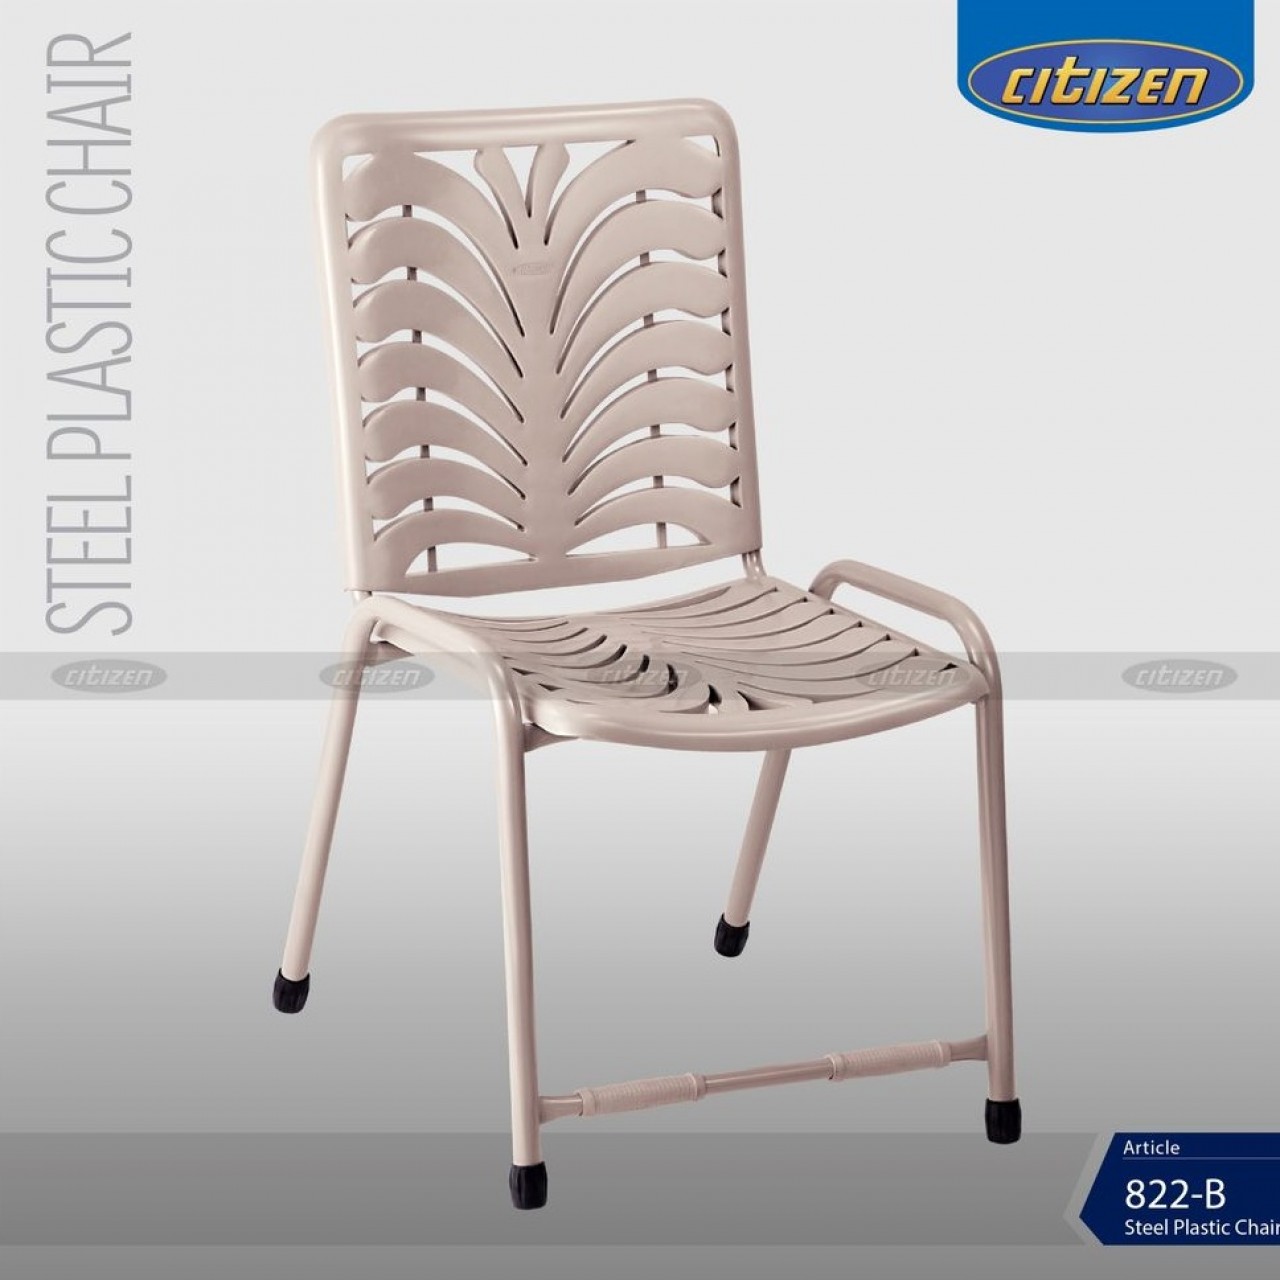 Citizen 822-B Steel & Plastic Chair - Indoor & Outdoor Furniture